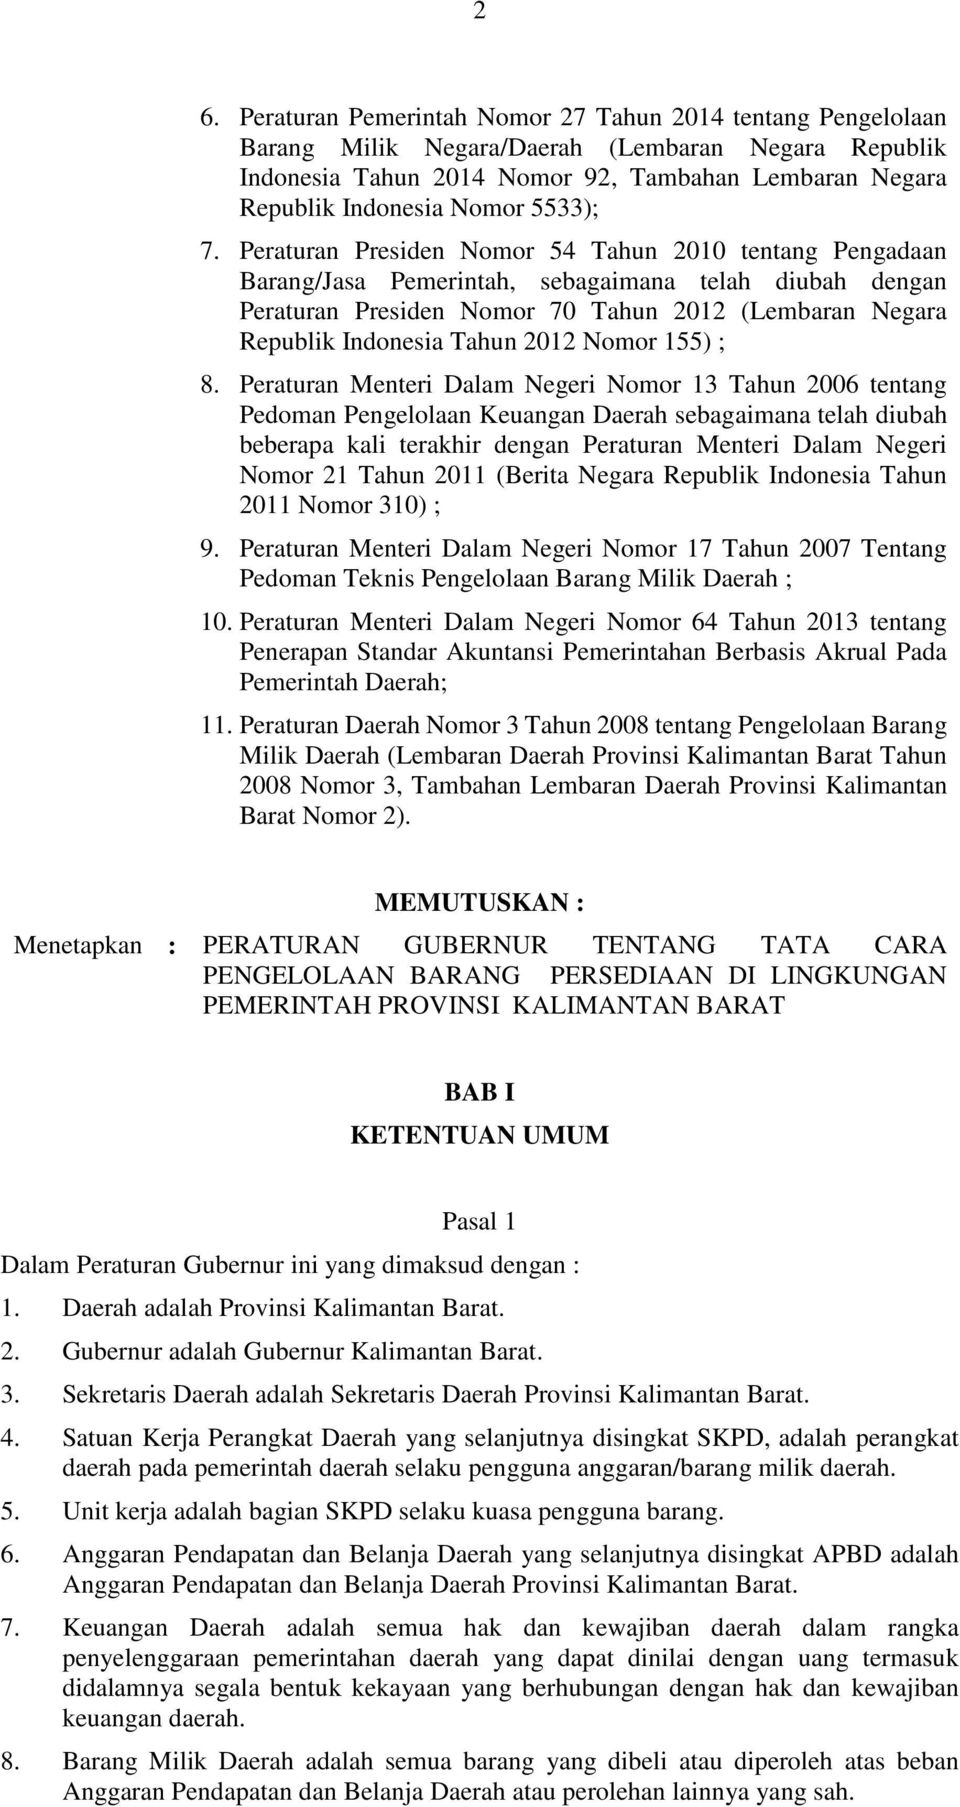 Peraturan Presiden Nomor 54 Tahun 2010 tentang Pengadaan Barang/Jasa Pemerintah, sebagaimana telah diubah dengan Peraturan Presiden Nomor 70 Tahun 2012 (Lembaran Negara Republik Indonesia Tahun 2012